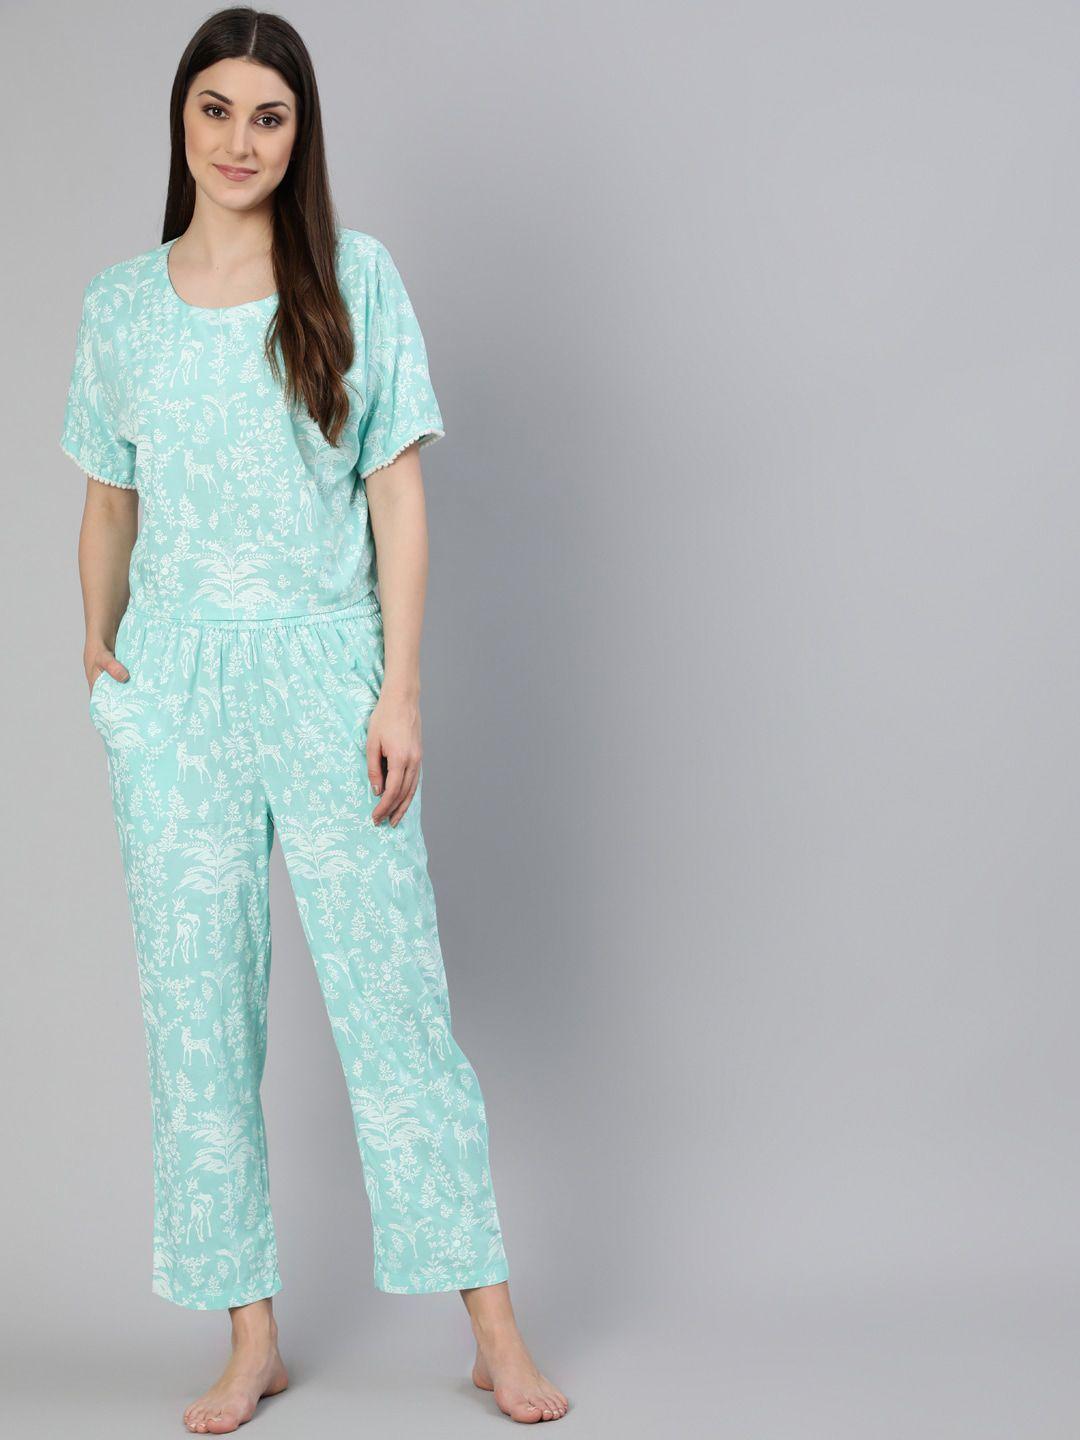 jaipur kurti women blue & white printed night suit